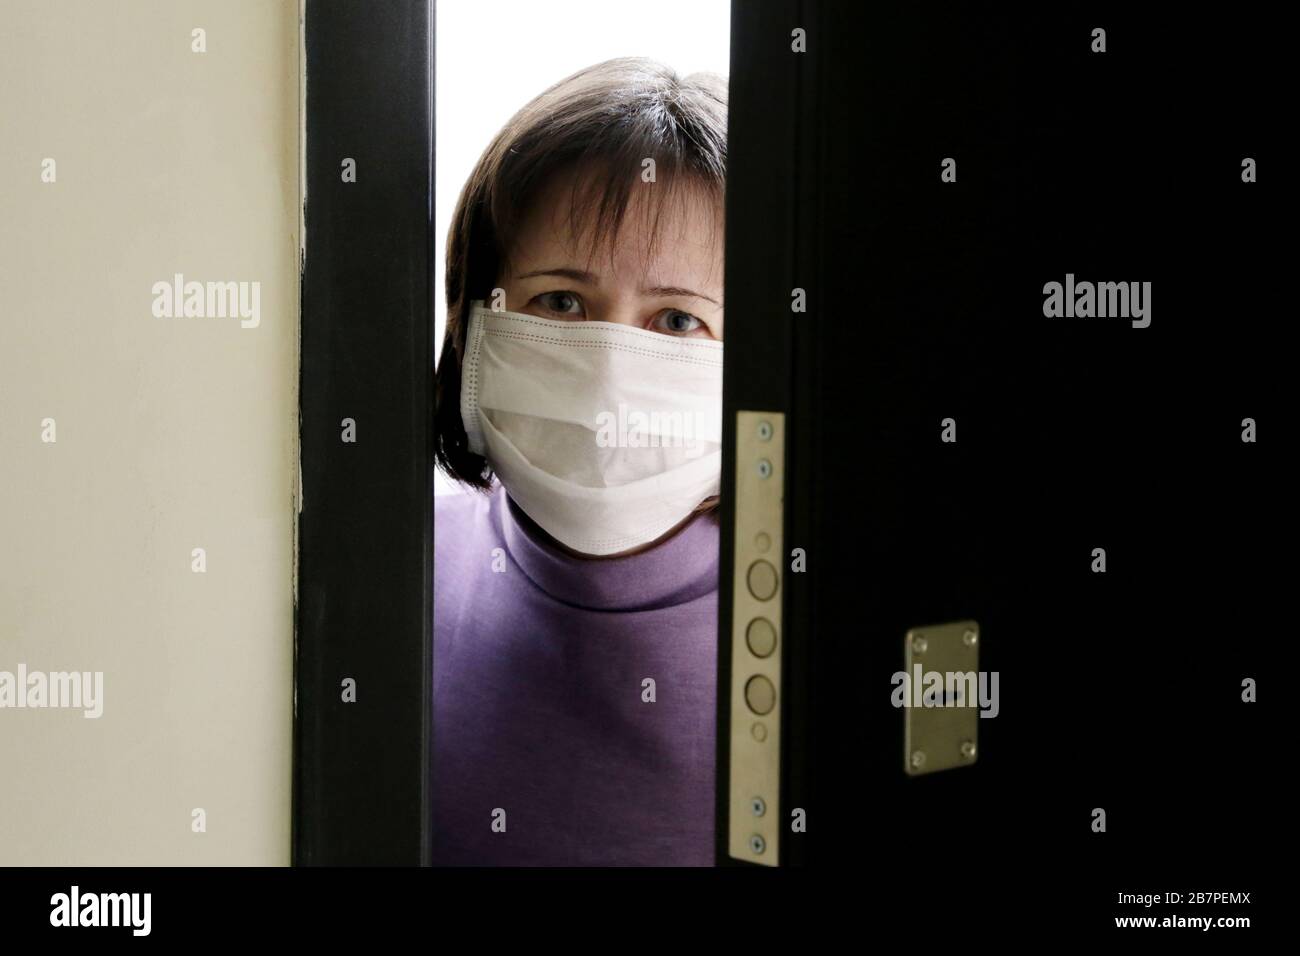 Cuarentena domiciliaria durante la epidemia de coronavirus COVID-19. Mujer preocupada en una máscara médica de pie en la puerta abierta Foto de stock